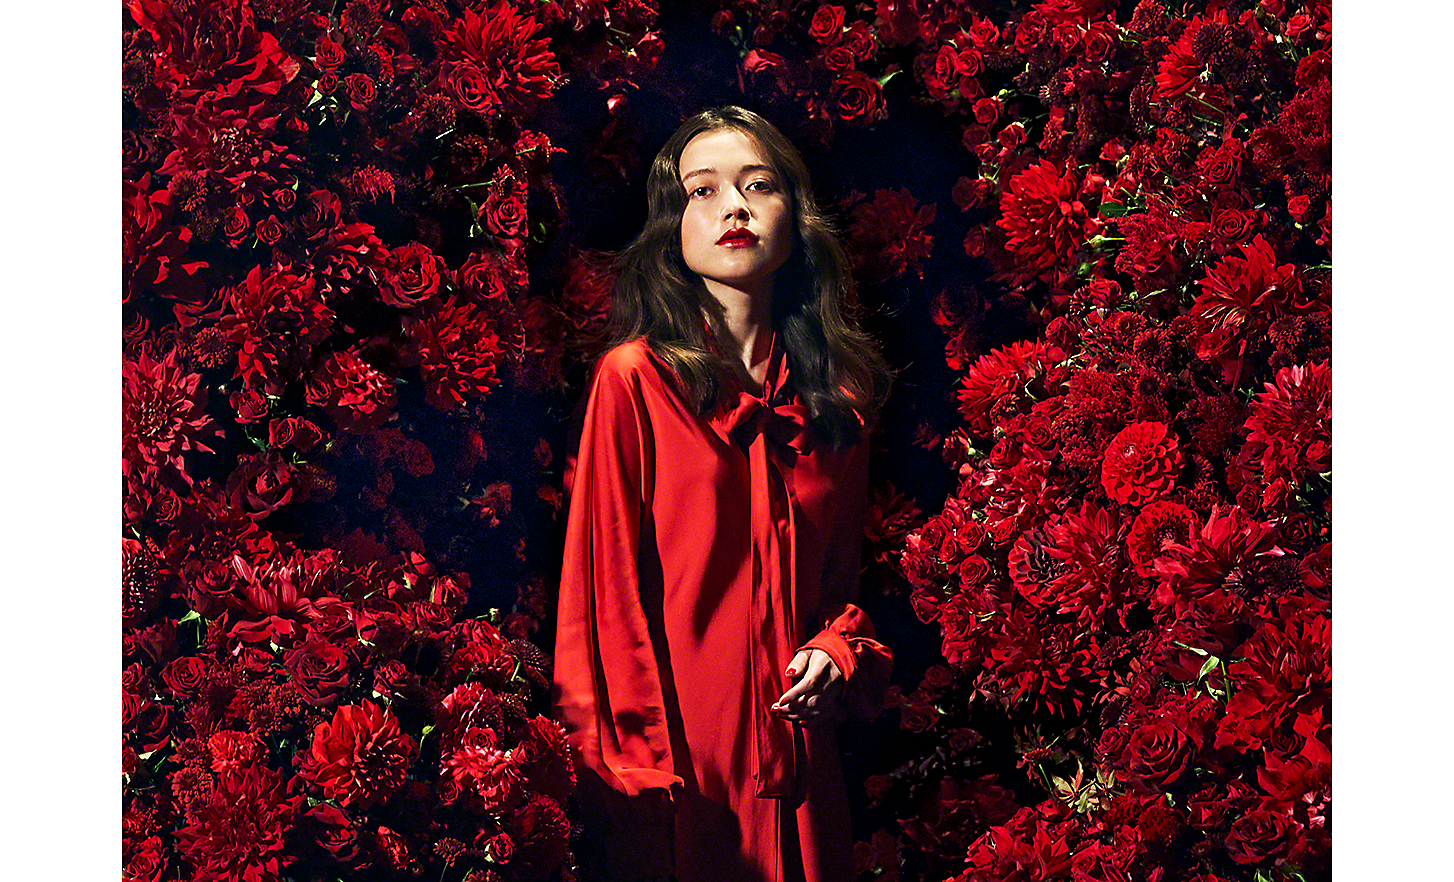 Instantánea de 100 mm de una mujer vestida de rojo rodeada de flores rojas.